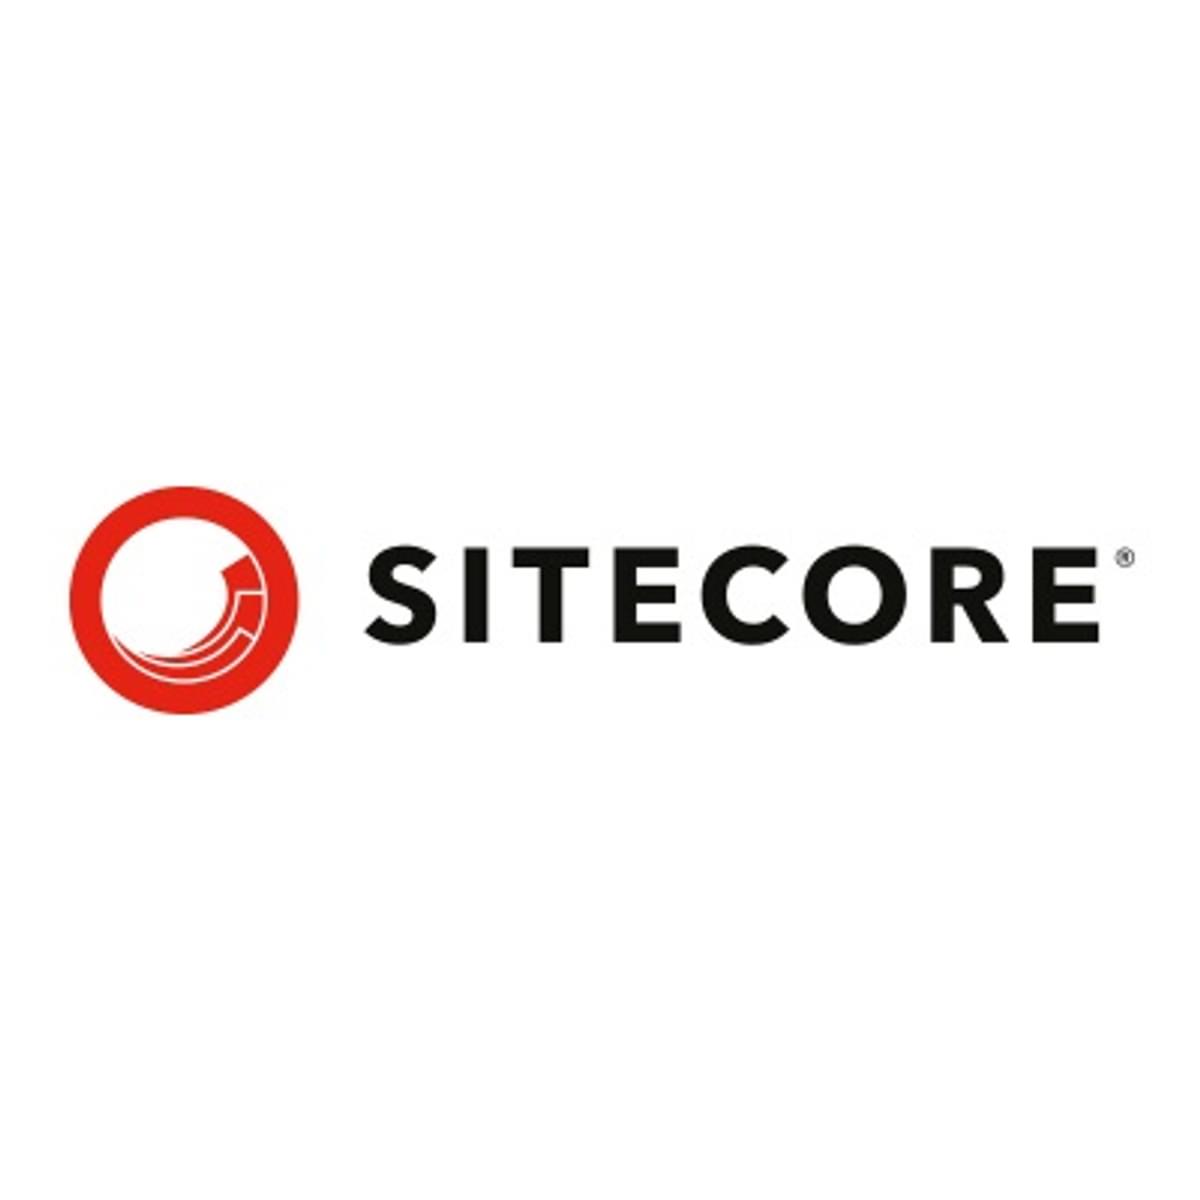 Sitecore breidt uit met de overname van Boxever en Four51 image